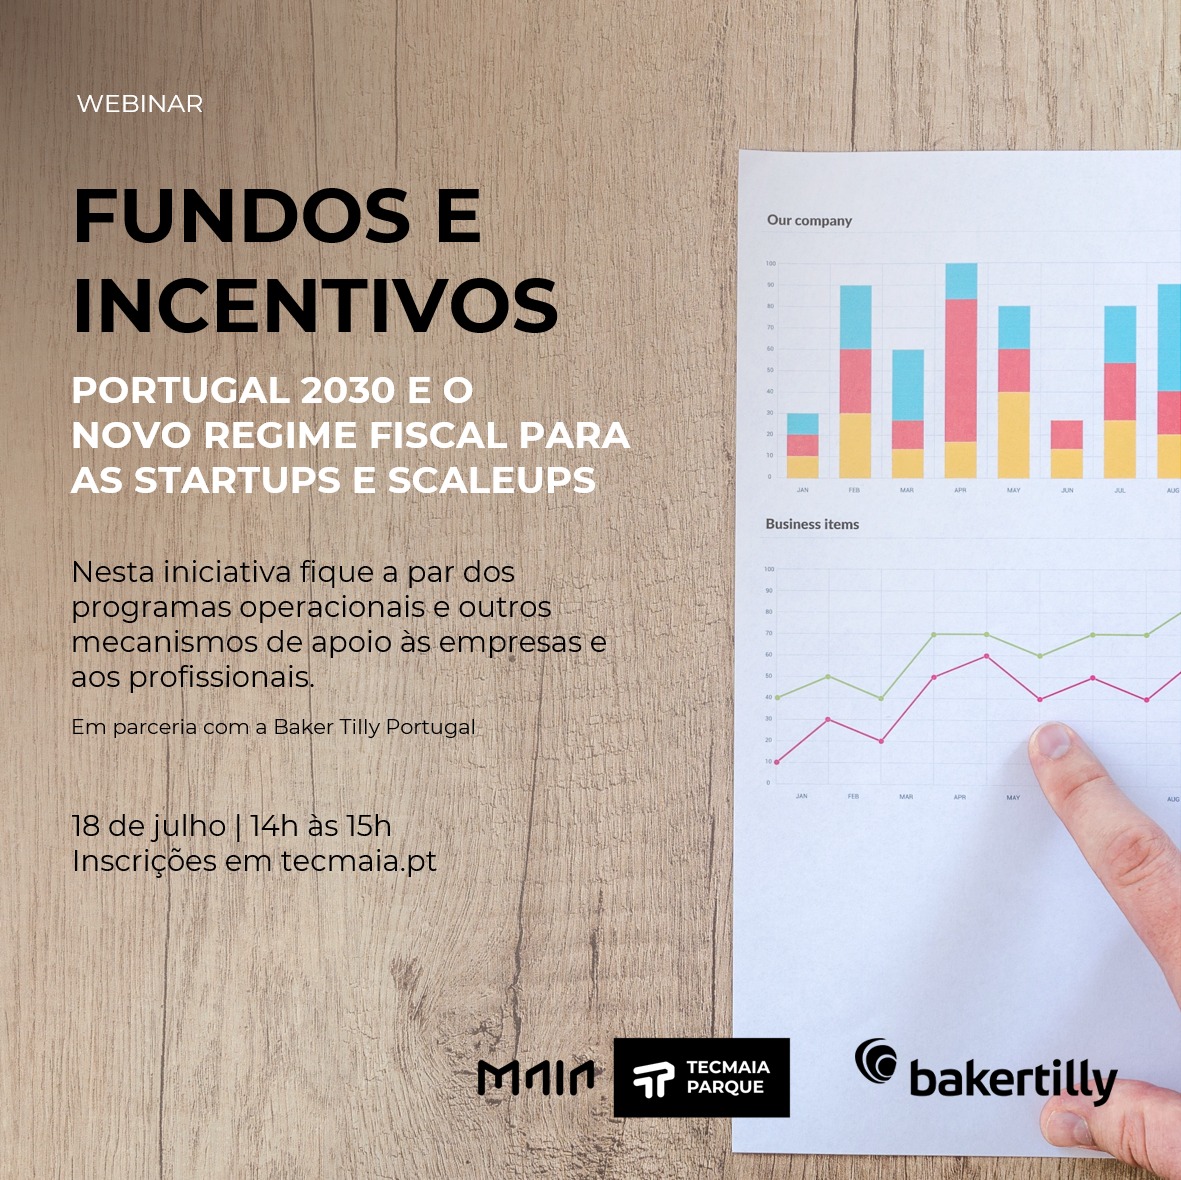 Webinar "Fundos e Incentivos - Portugal 2030 e Novo Regime Fiscal Startups e Scaleups"